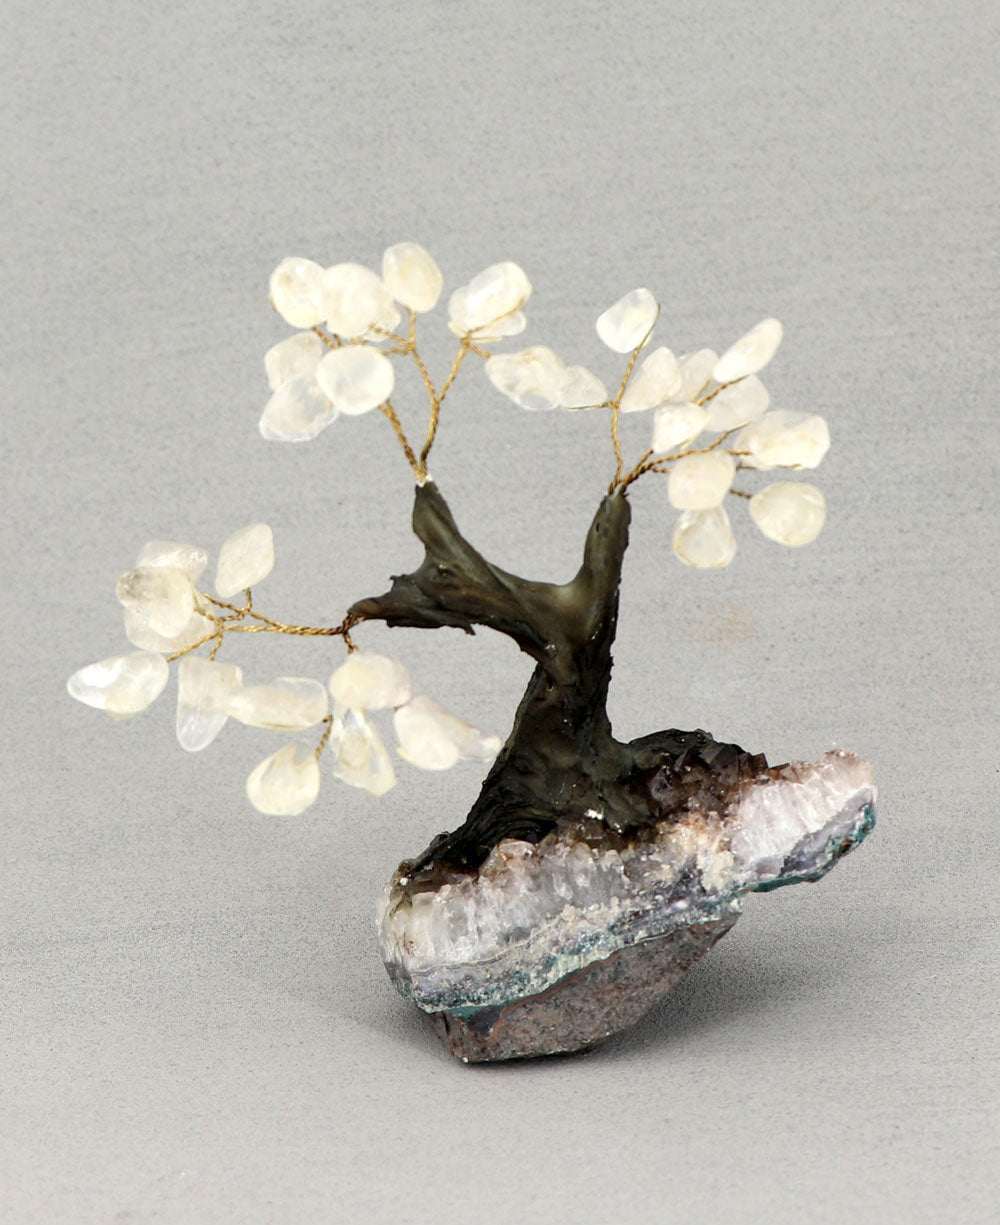 Tumbled Clear Quartz Healing Gemstone Bonsai Tree - Home & Garden